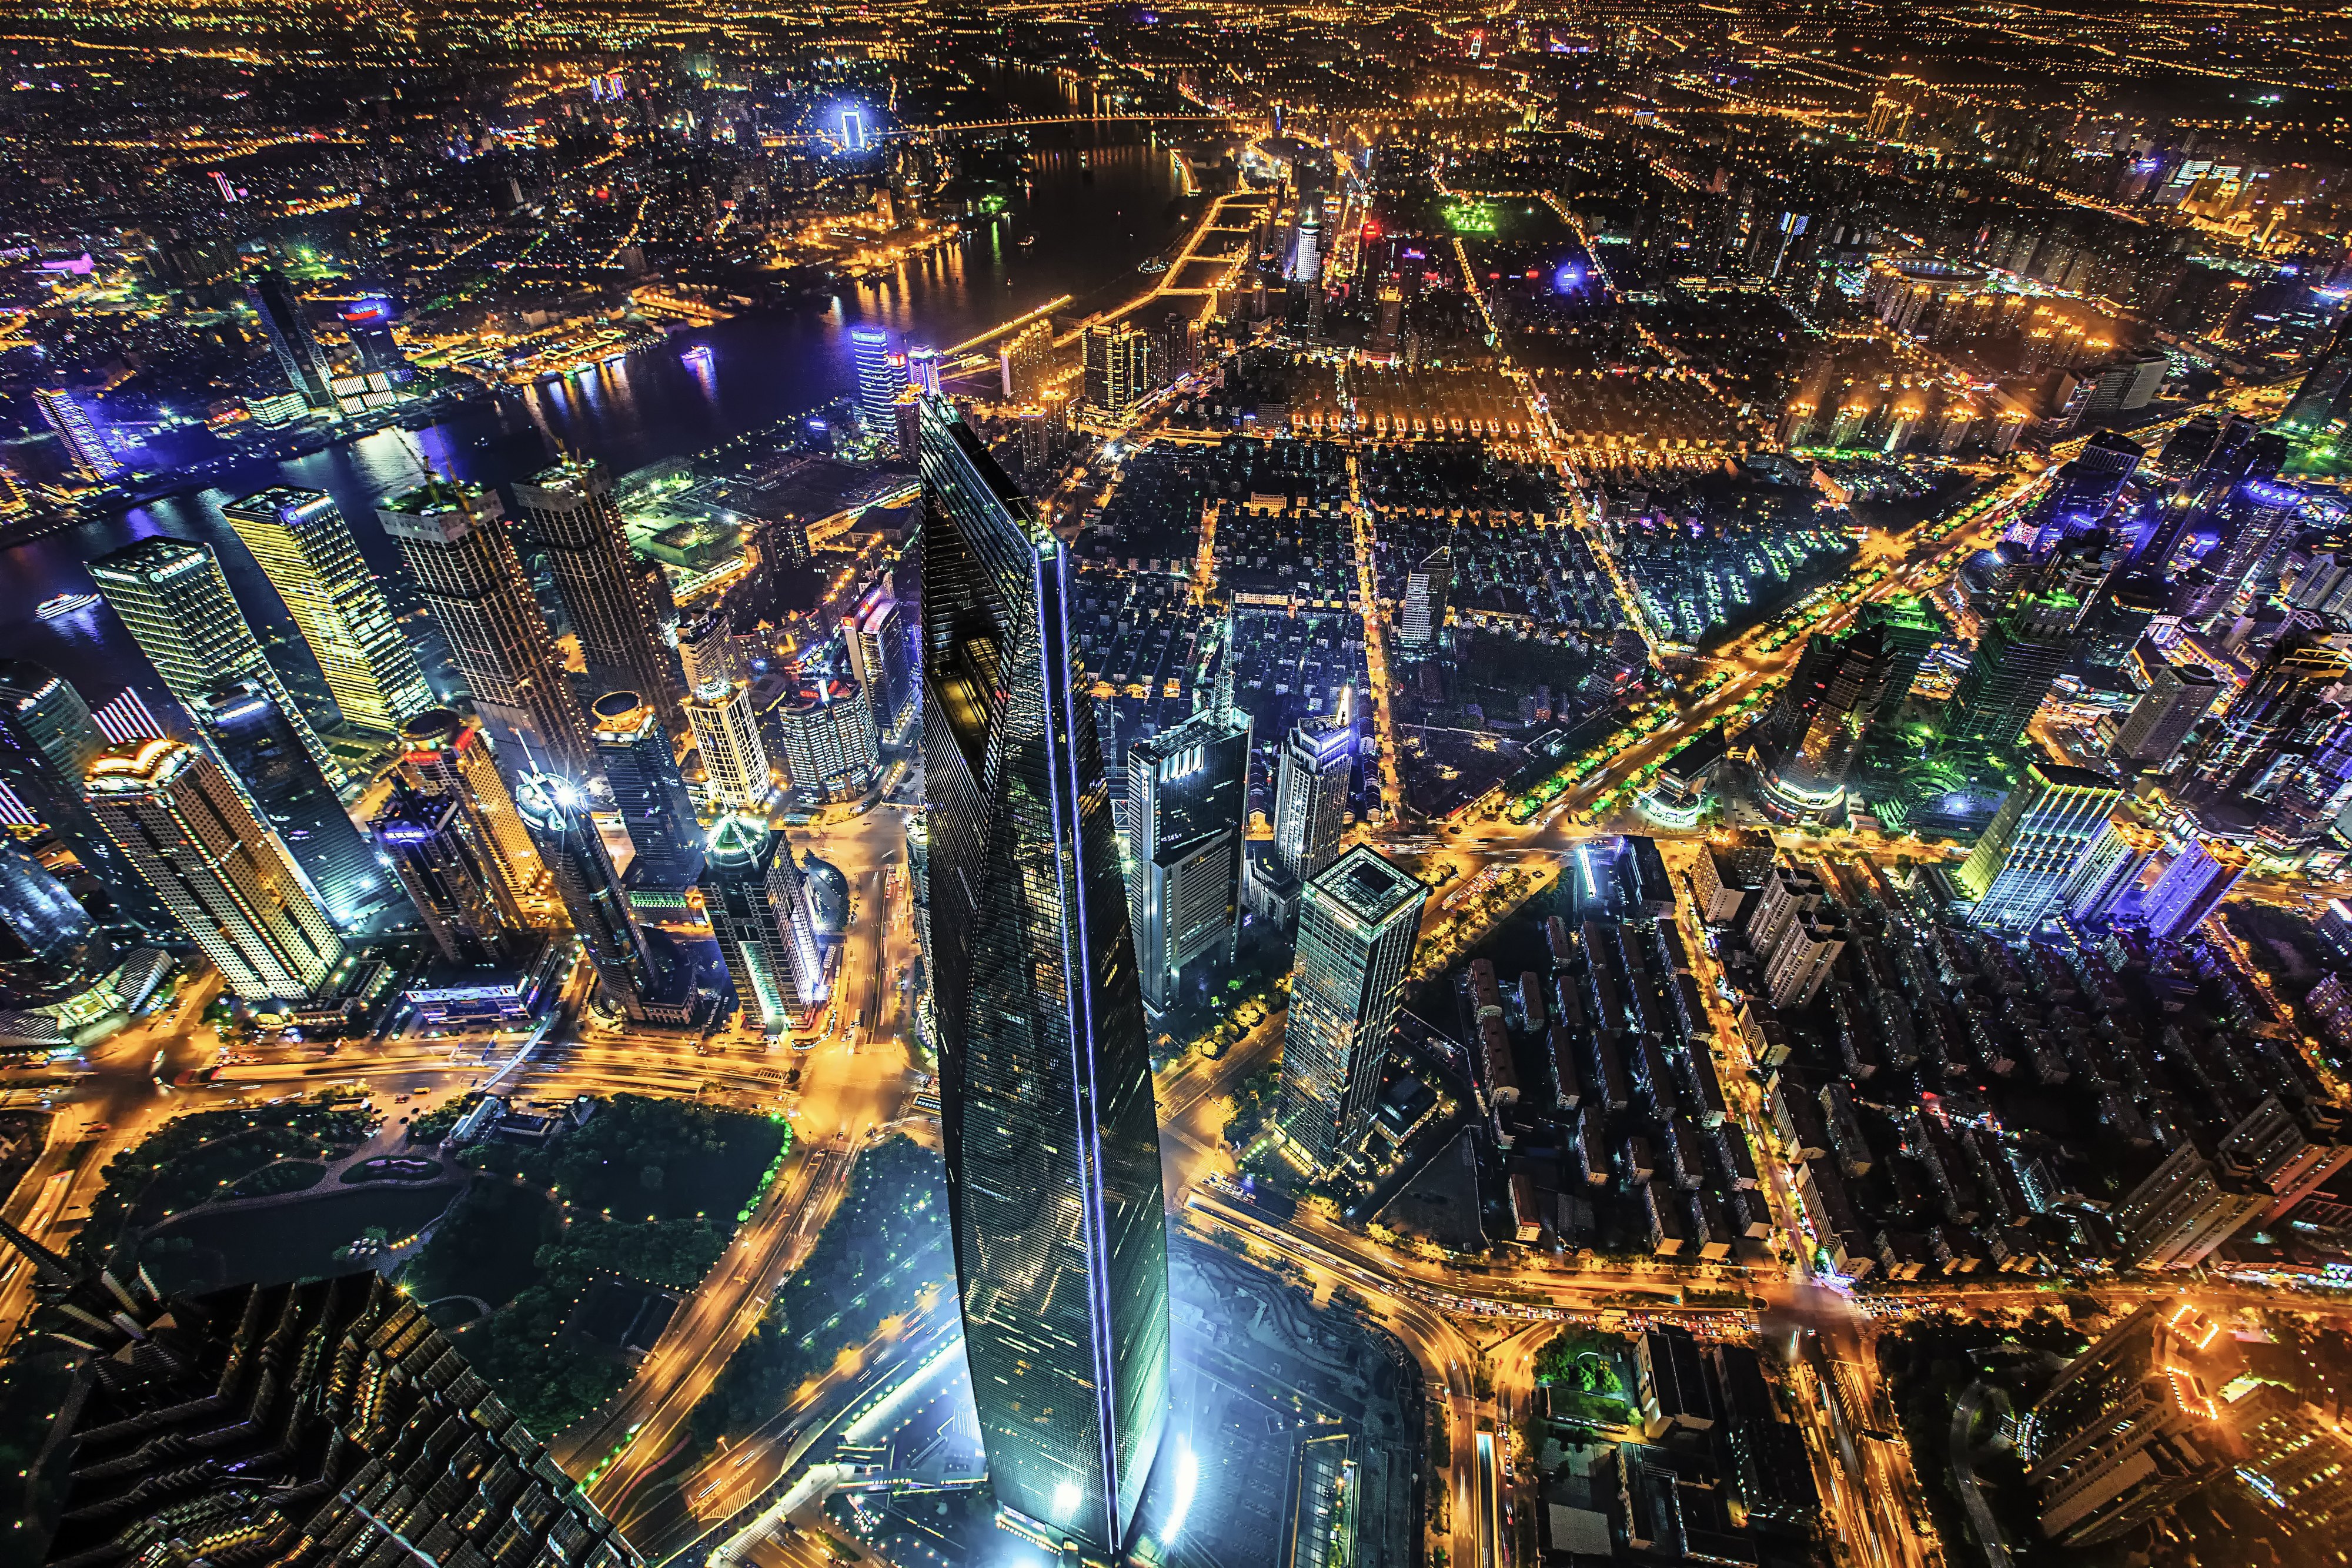 上海环球金融中心 Shanghai World Financial Center (SWFC) - 中国上海景点